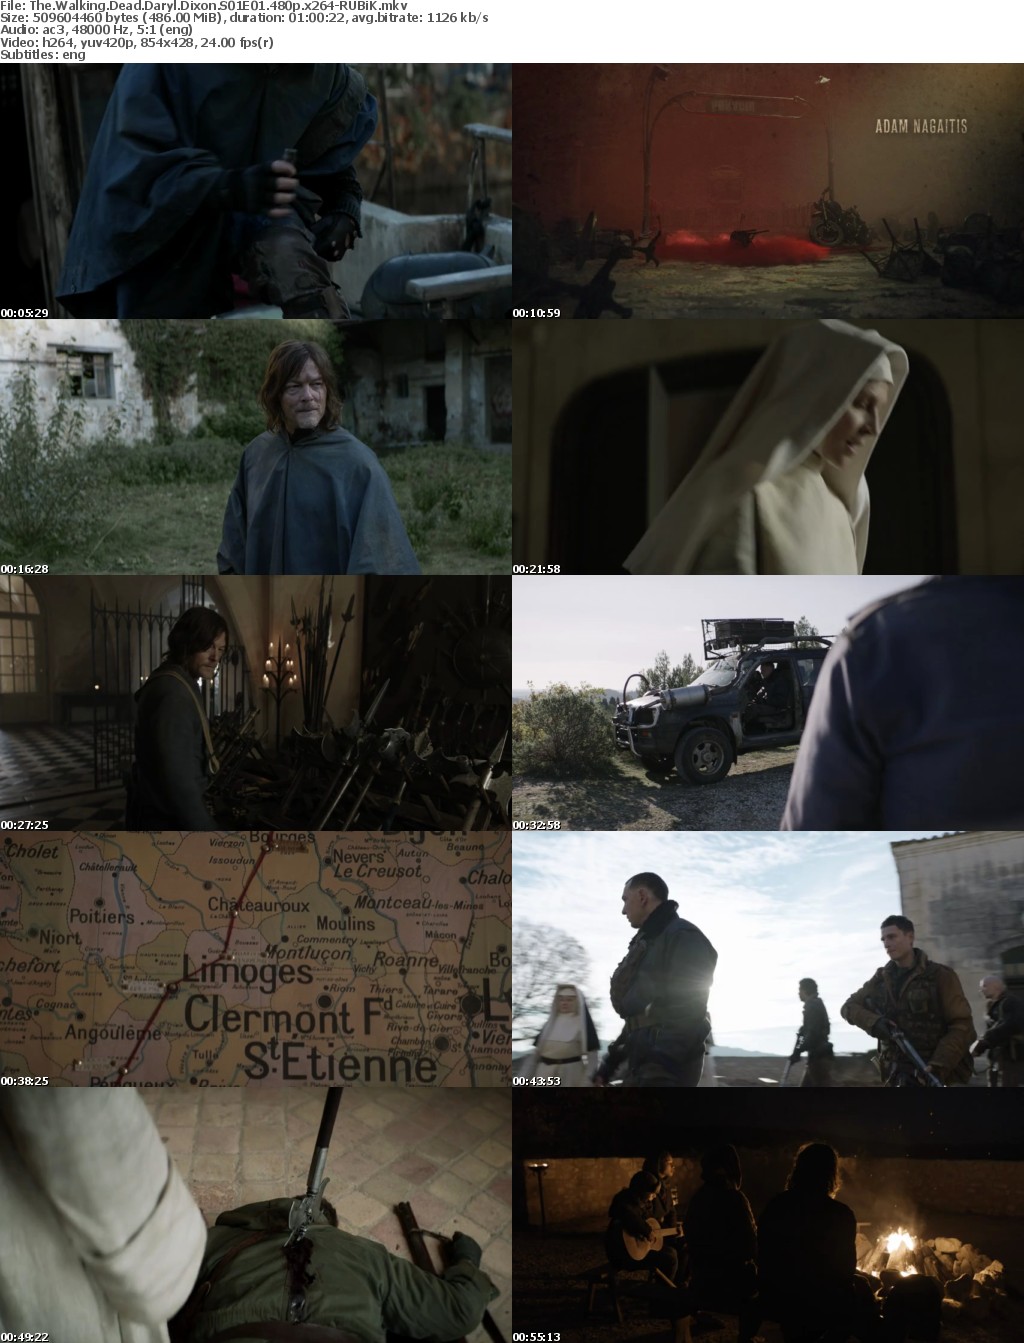 The Walking Dead Daryl Dixon S01 480p x264-RUBiK